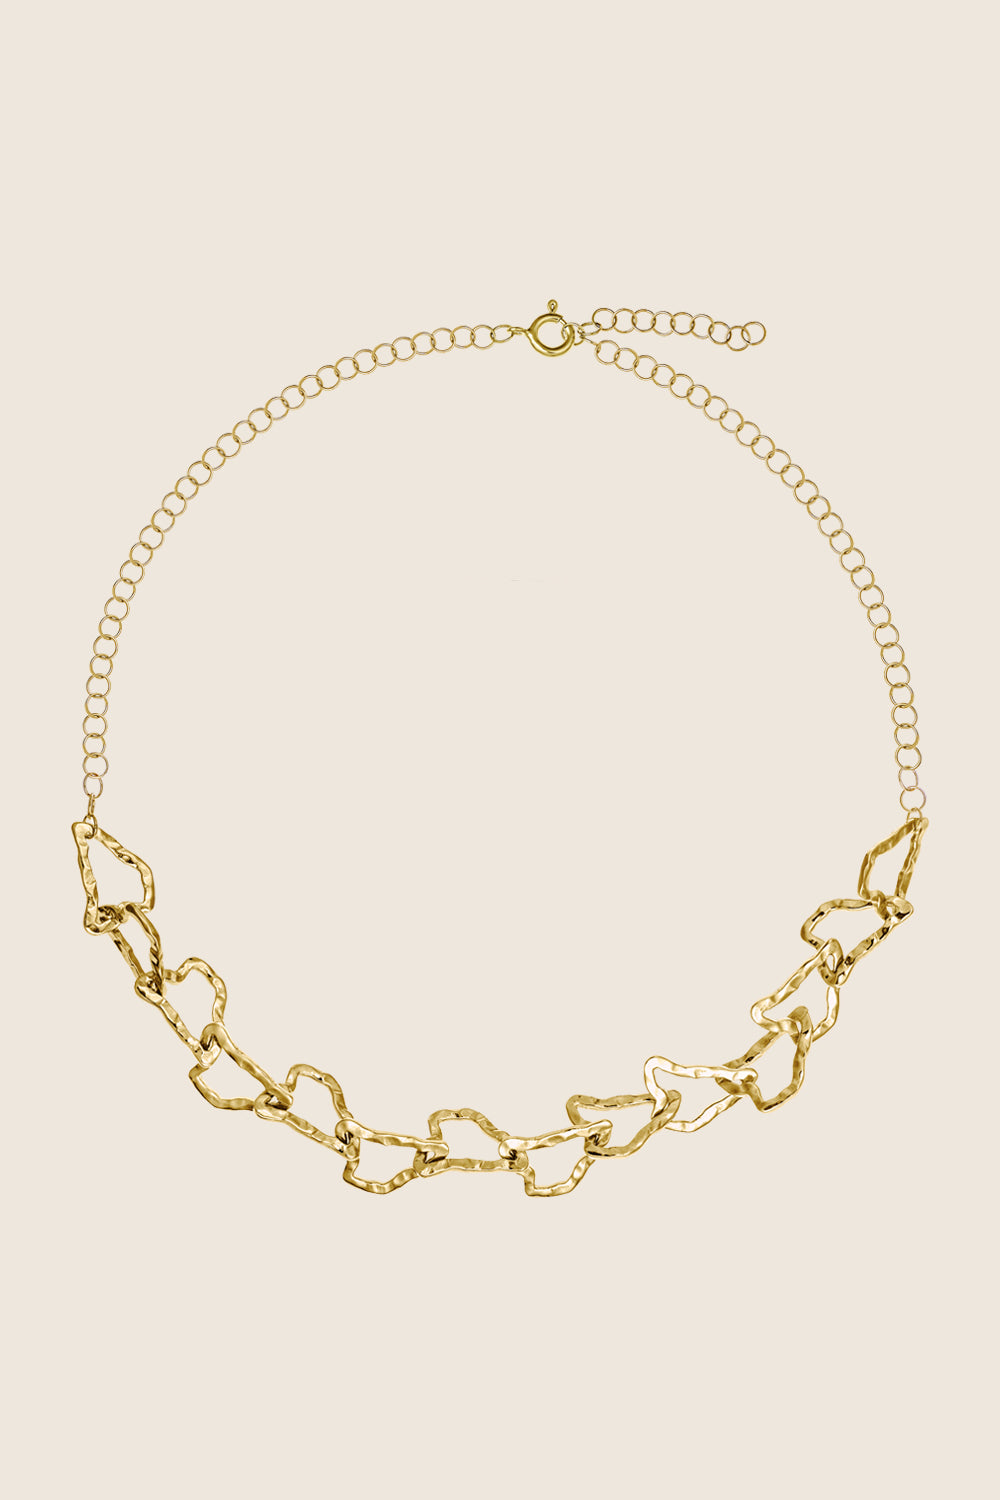 naszyjnik łańcuch złoto 585 DORSA kolekcja Capri biżuteria UMIAR